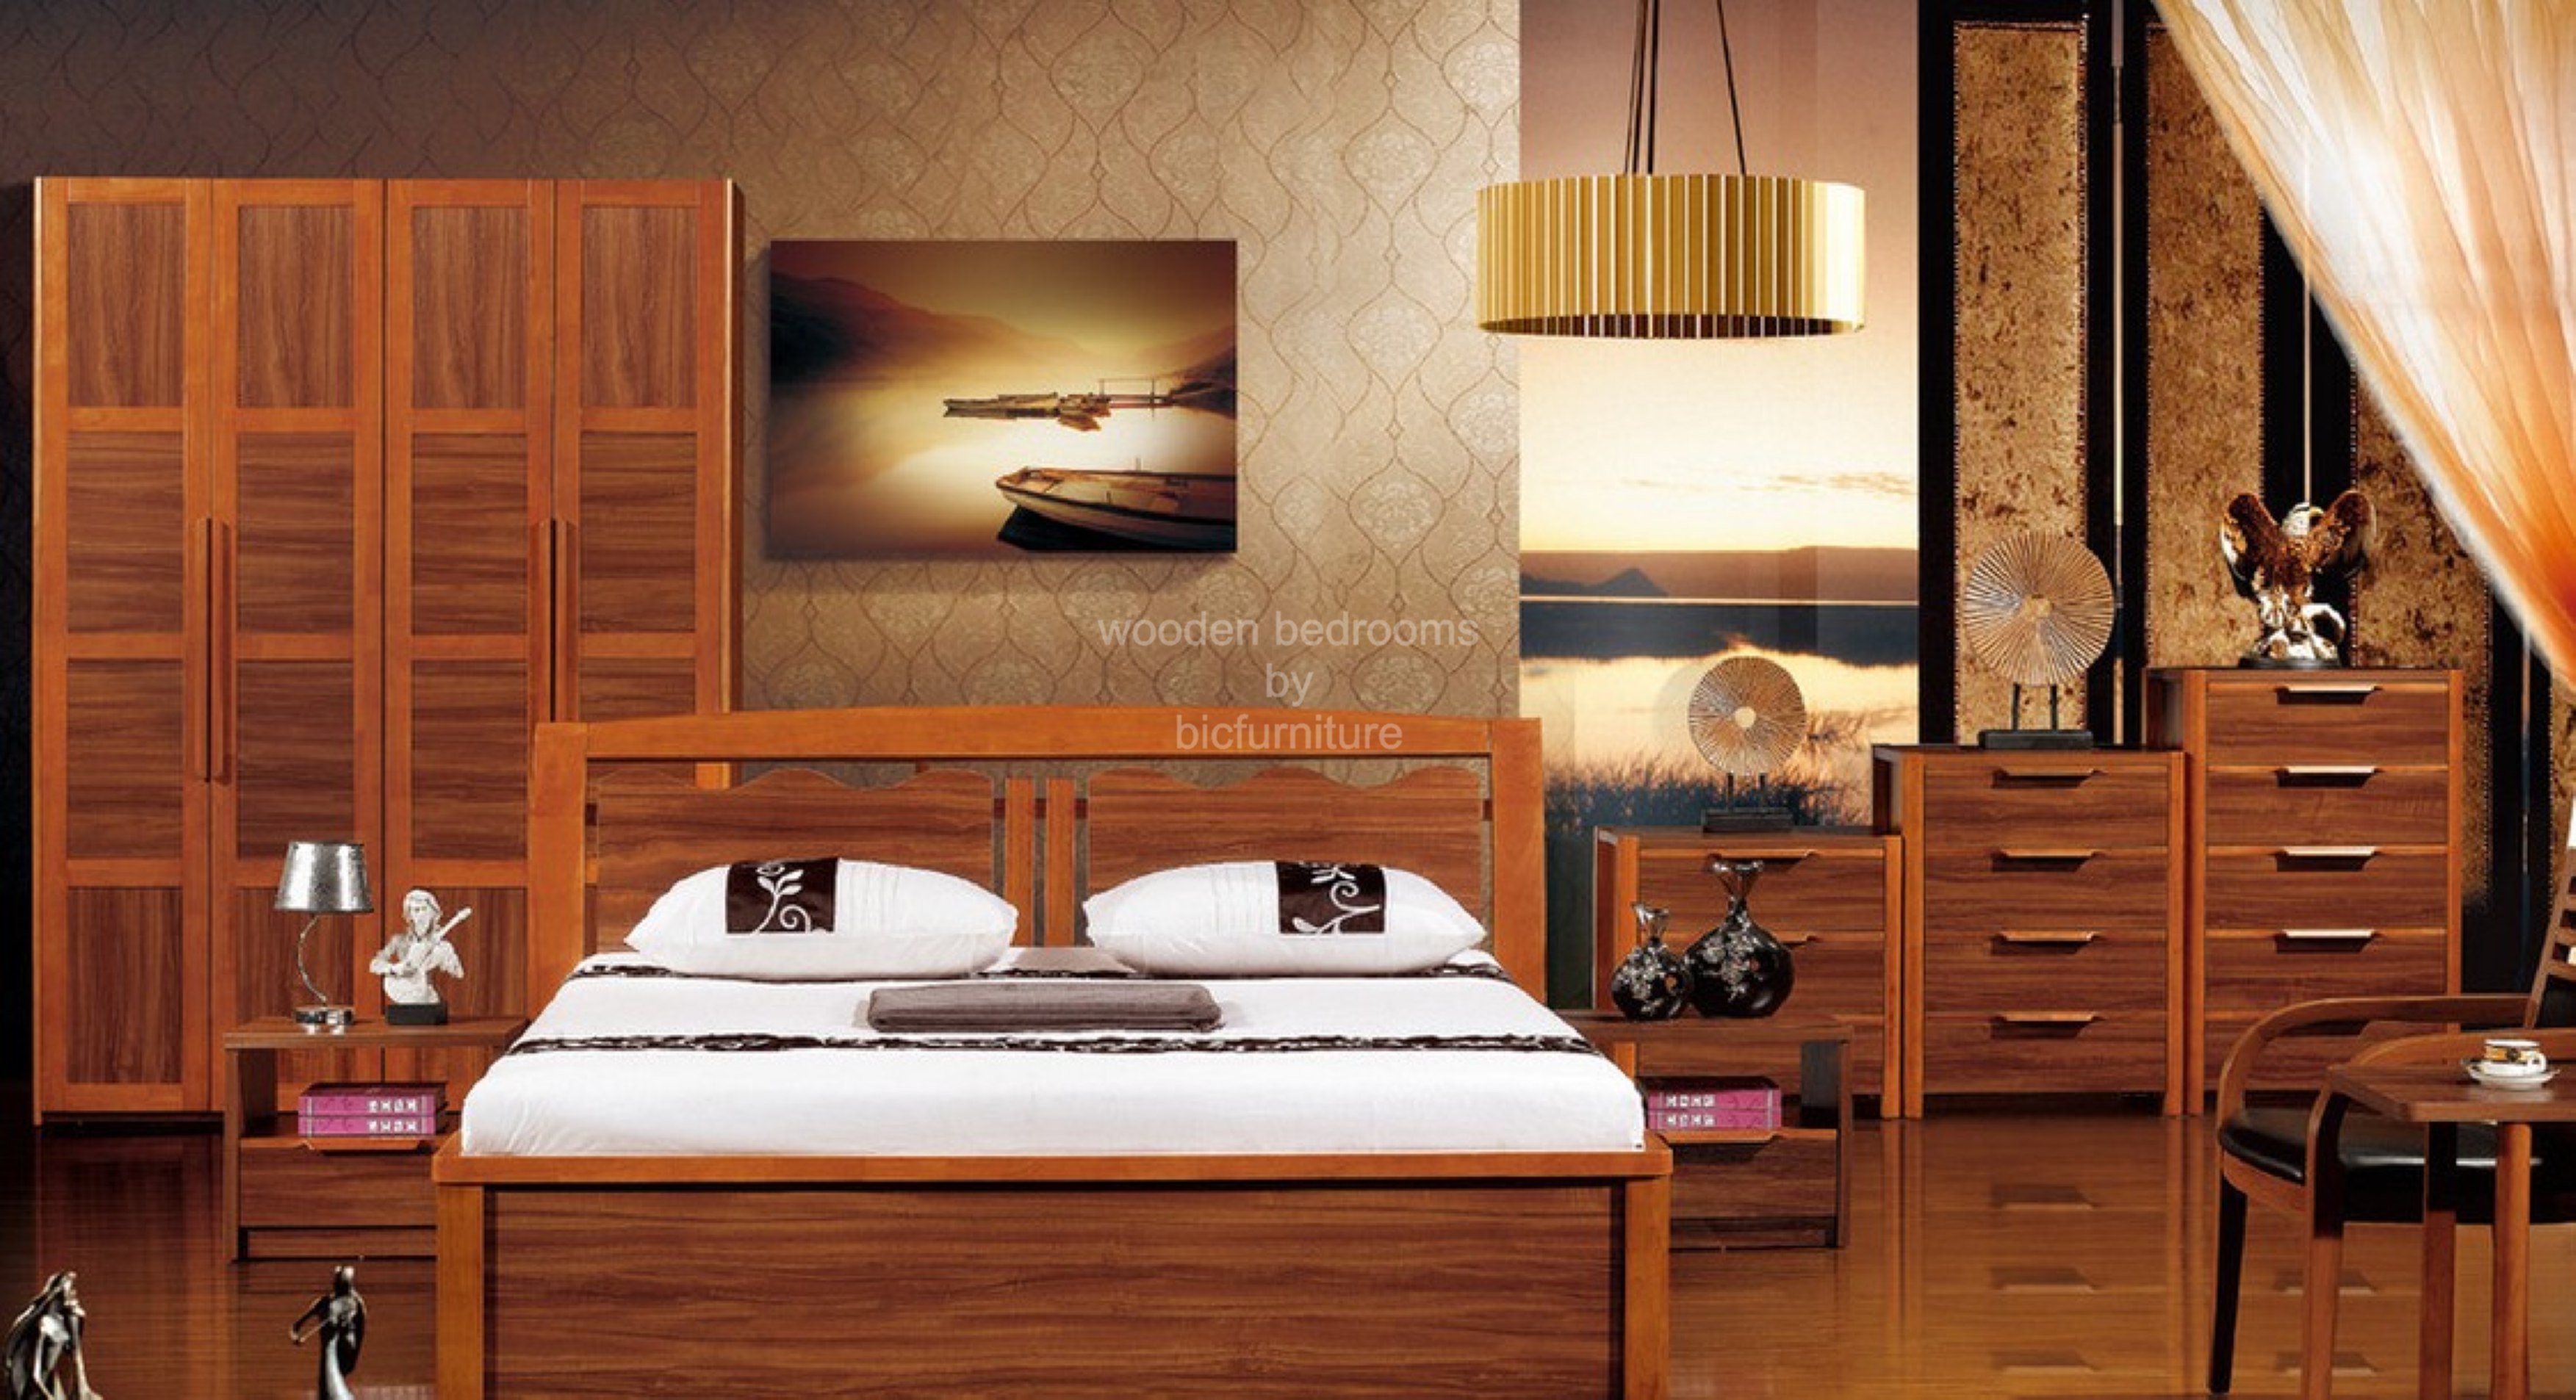 Elegant bedroom sets made in teak veneer